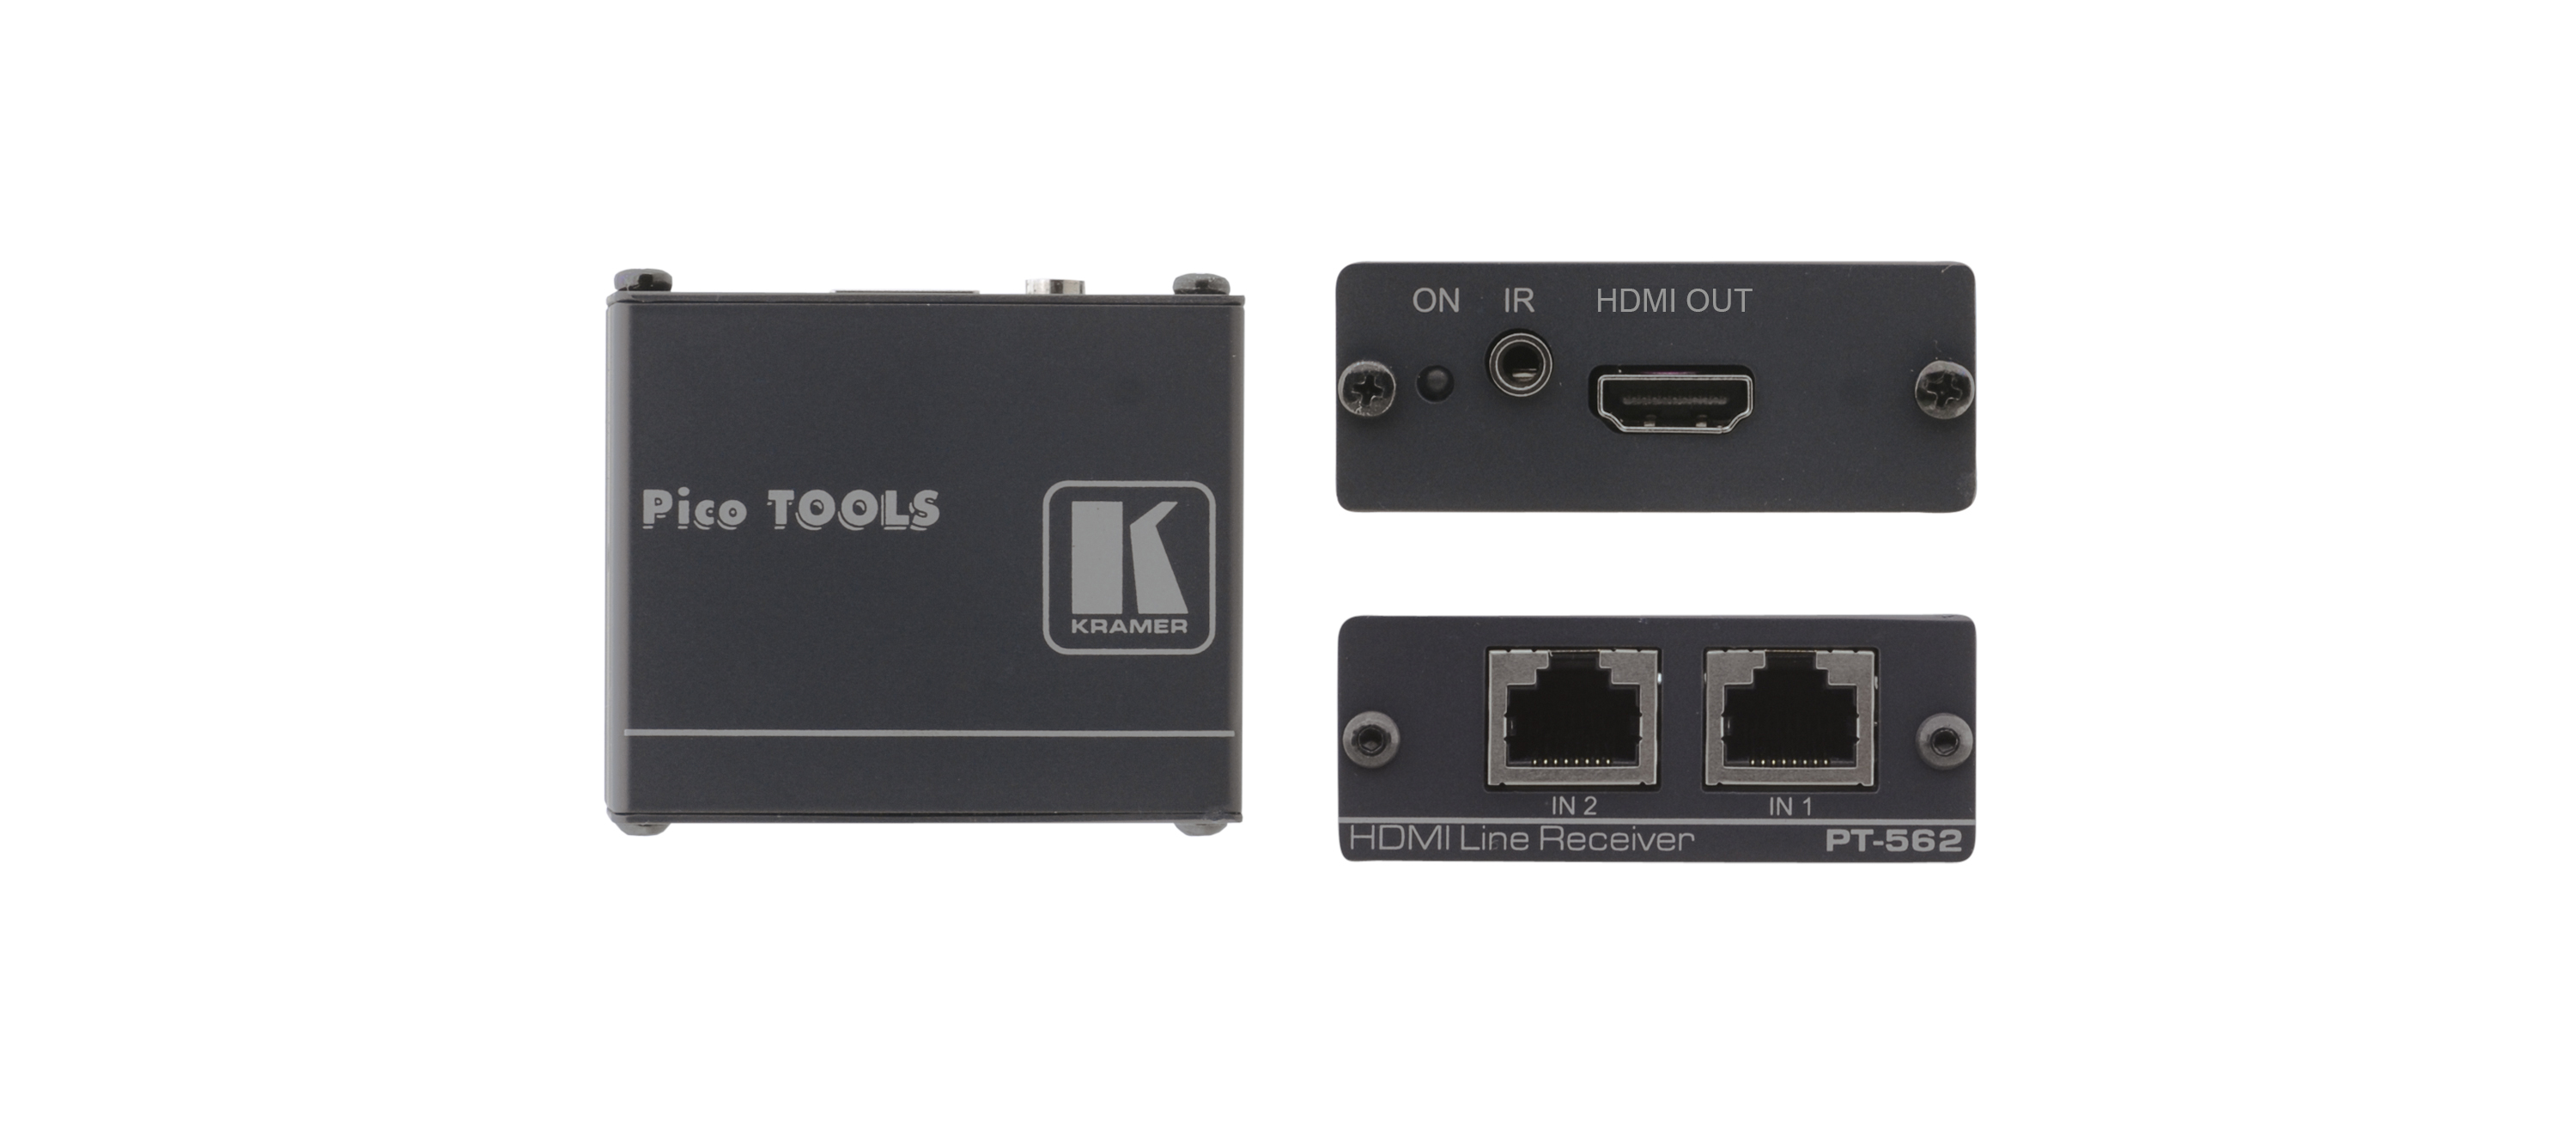 Приёмник Kramer PT-562 сигнала HDMI и ИК-команд из кабеля витой пары (TP), поддержка HDCP и HDMI 1.3, совместимость с HDTV, поддержка двунаправленной передачи и приема ИК сигналов, Power Connect, 1.65Gbps